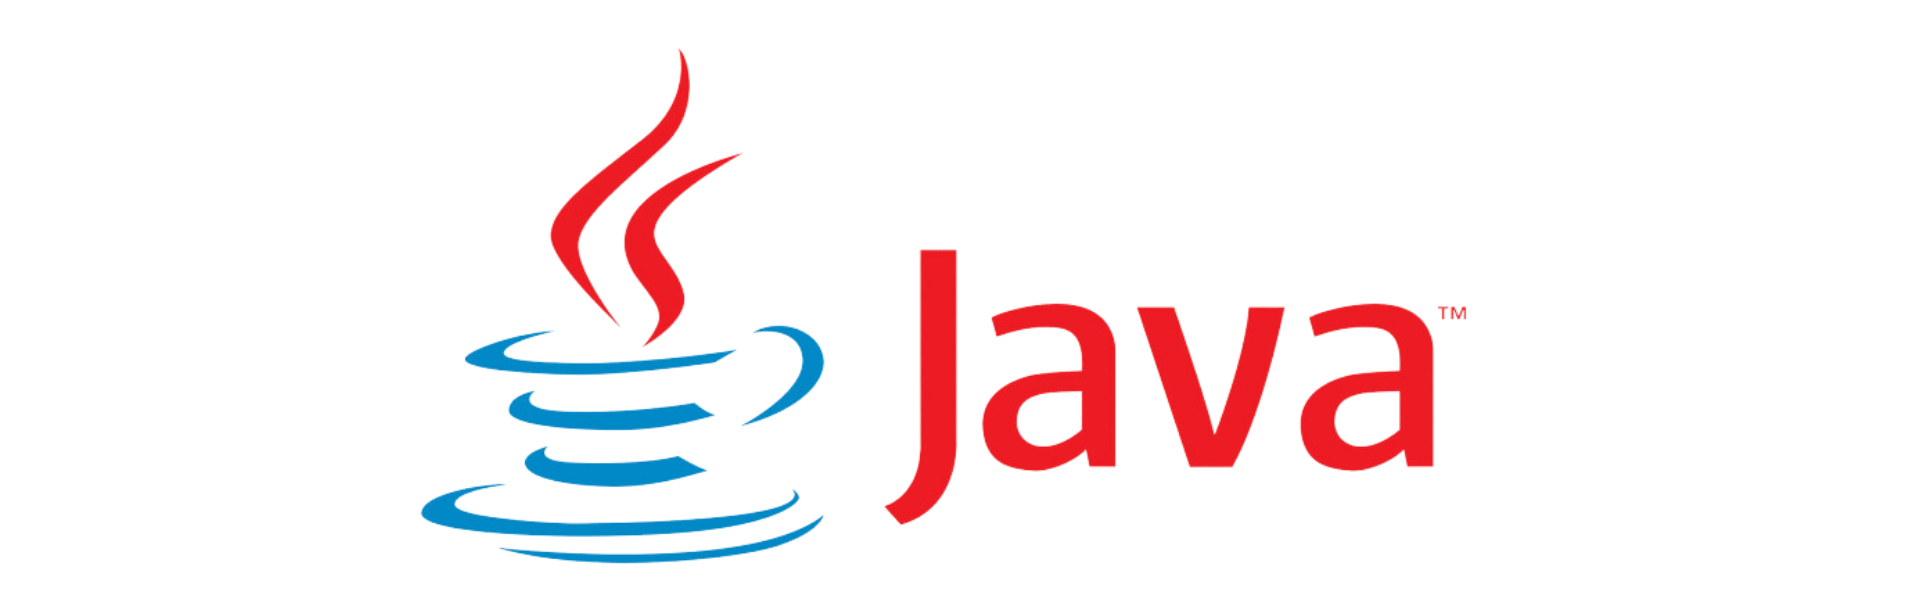 Java_logo